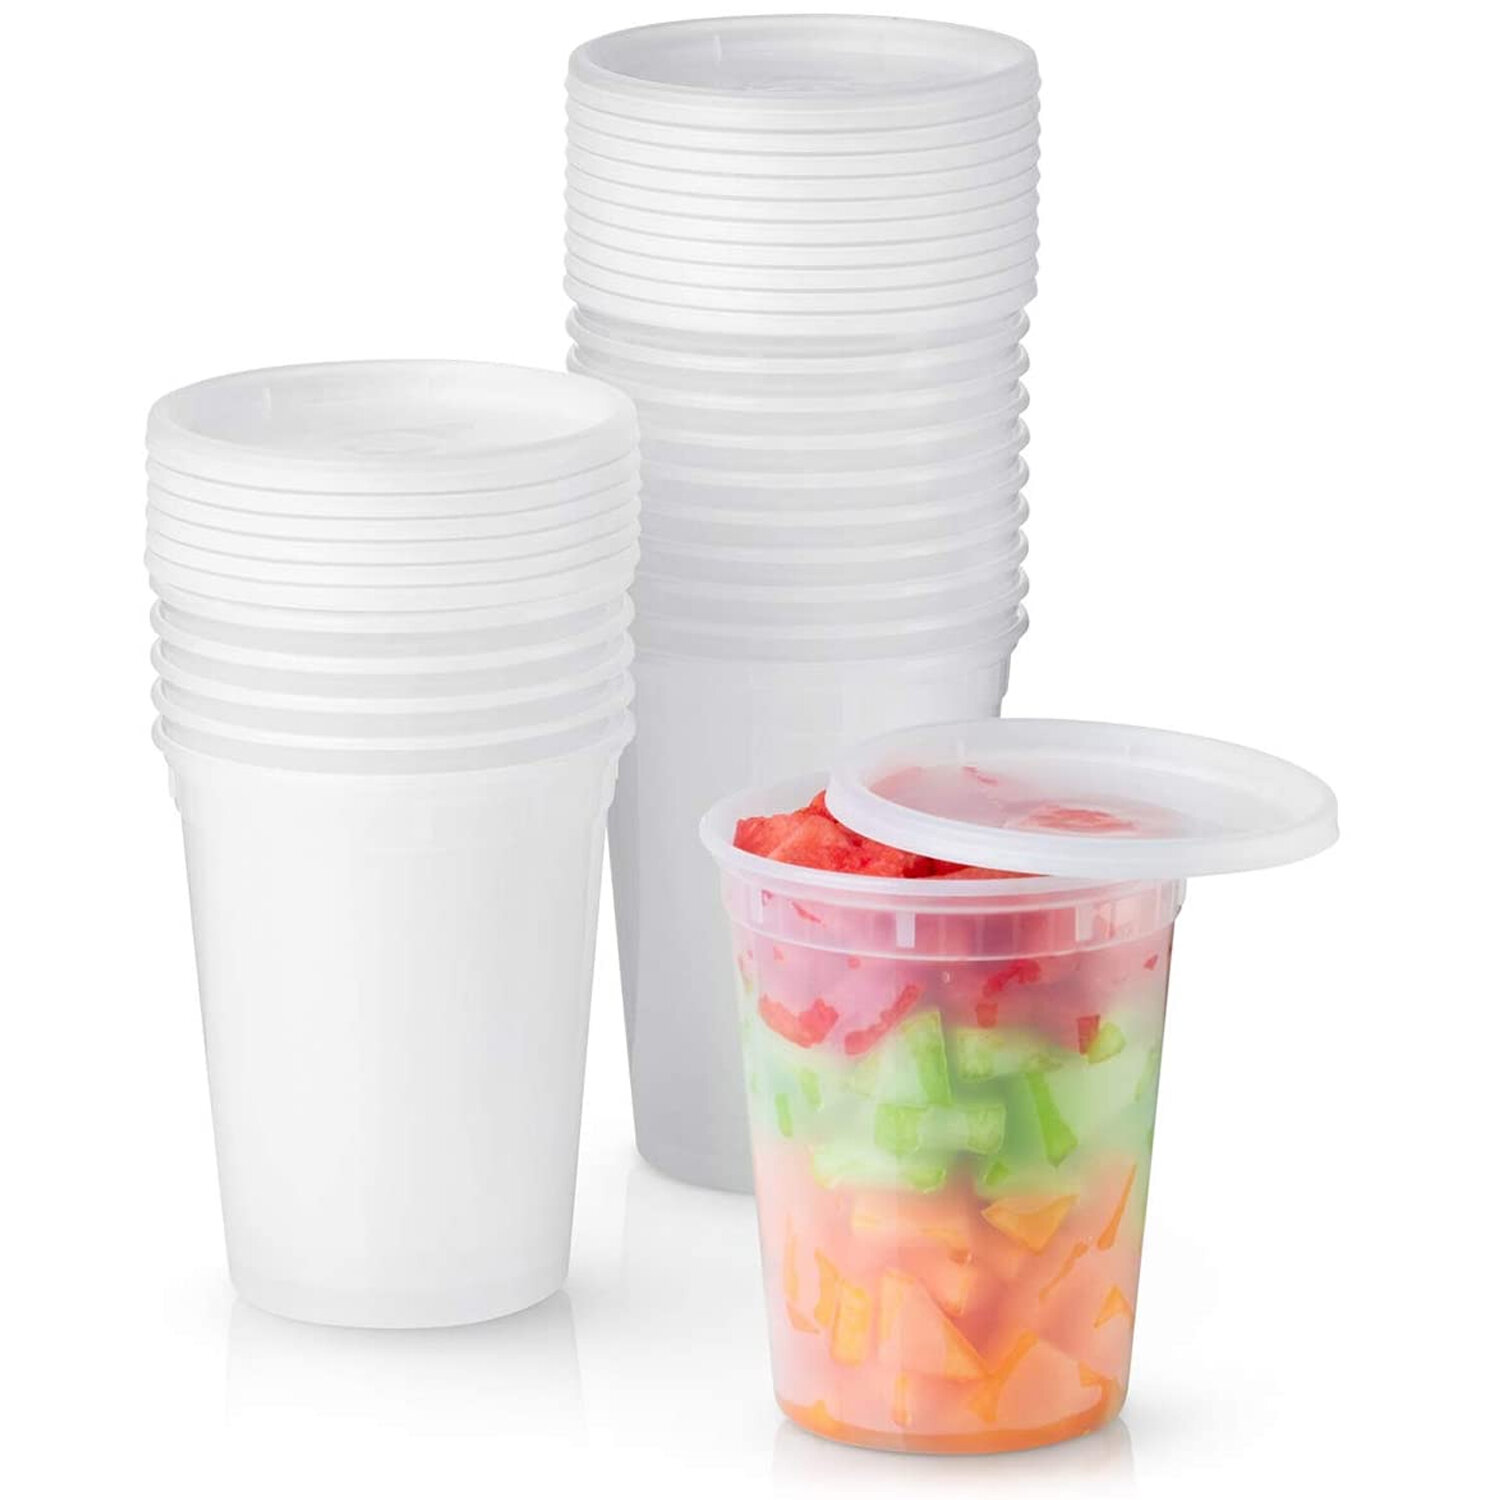 Prep & Savour 32 Oz Reusable Plastic Deli Containers